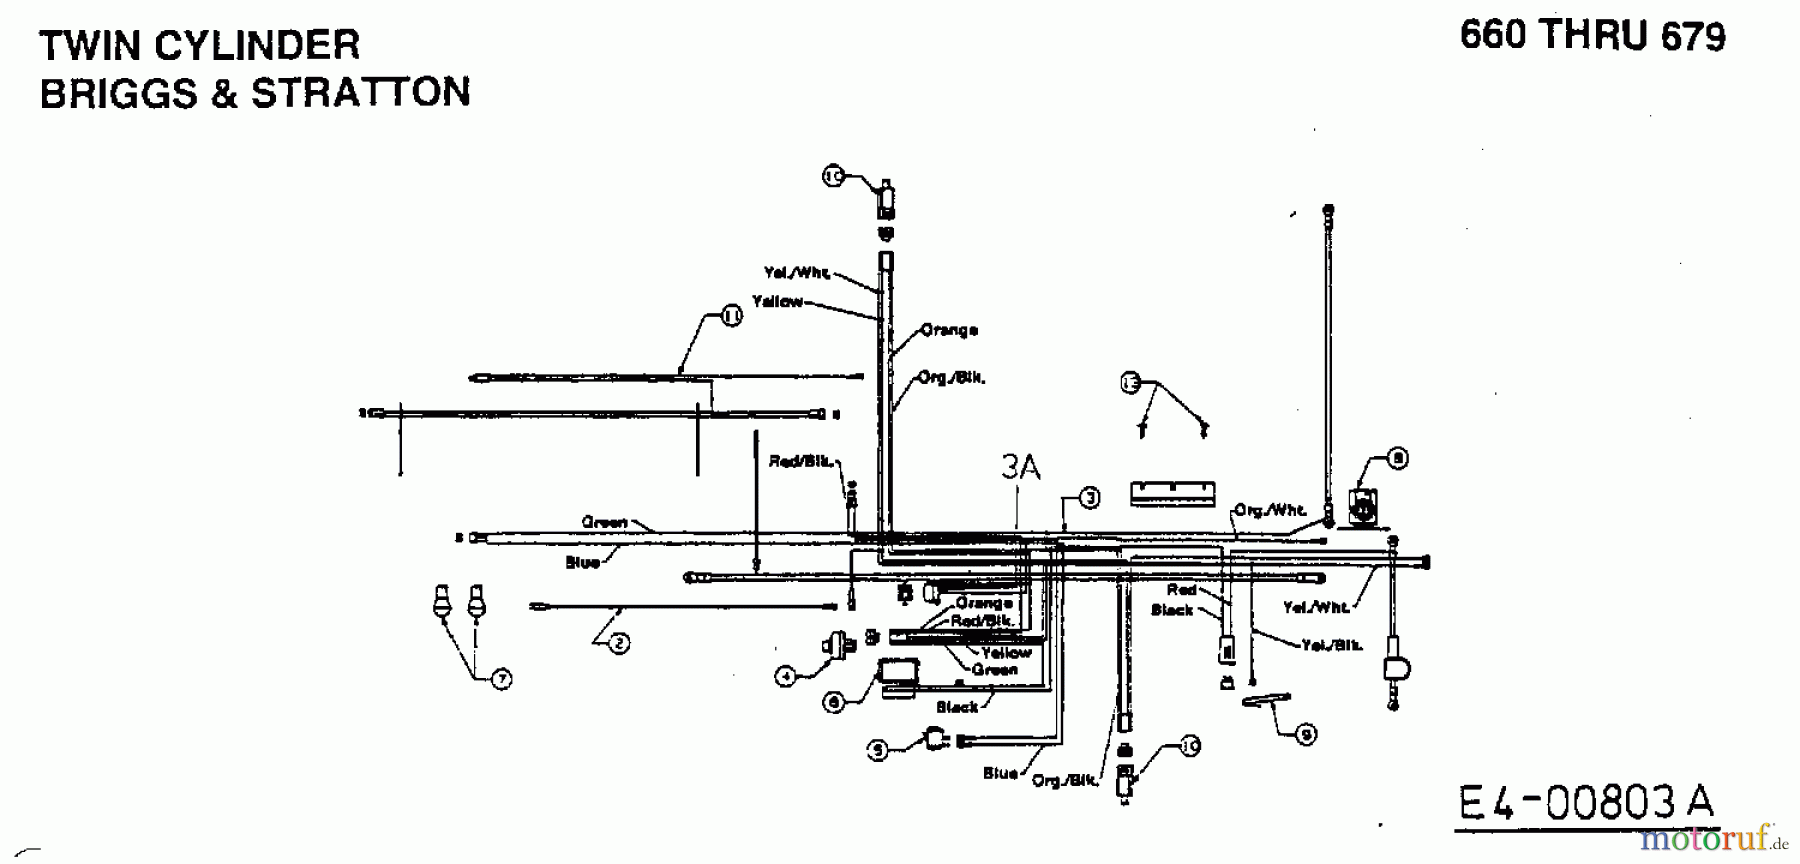  MTD Rasentraktoren B/180 13AQ675G661  (1999) Schaltplan 2 Zylinder